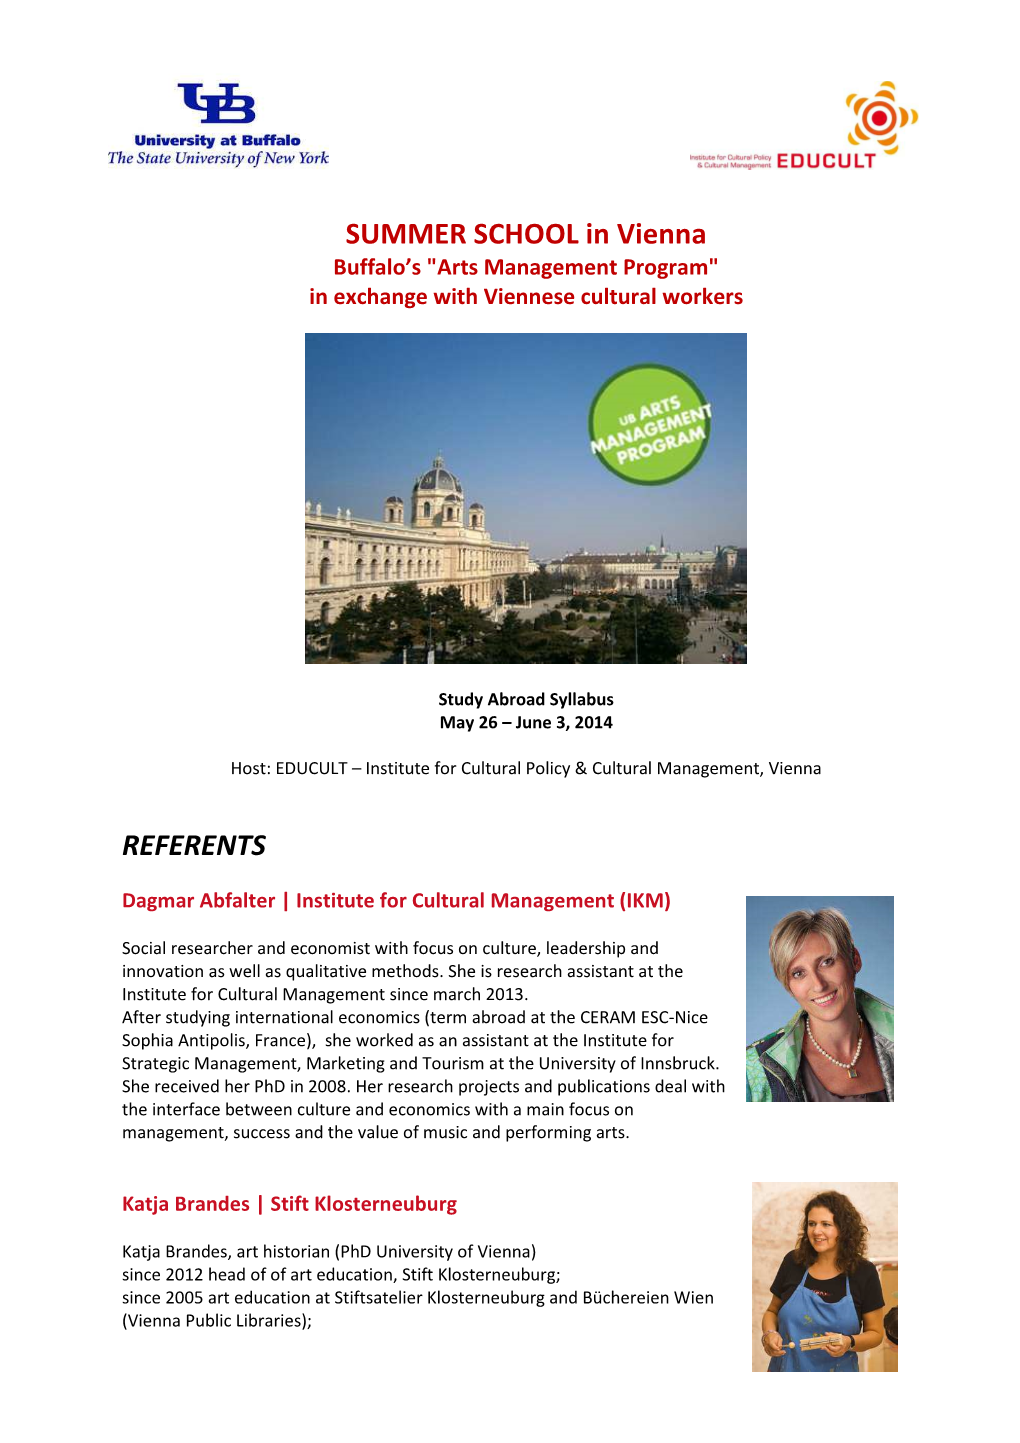 UB Summer School Vienna 2014 Referents 19 05 14